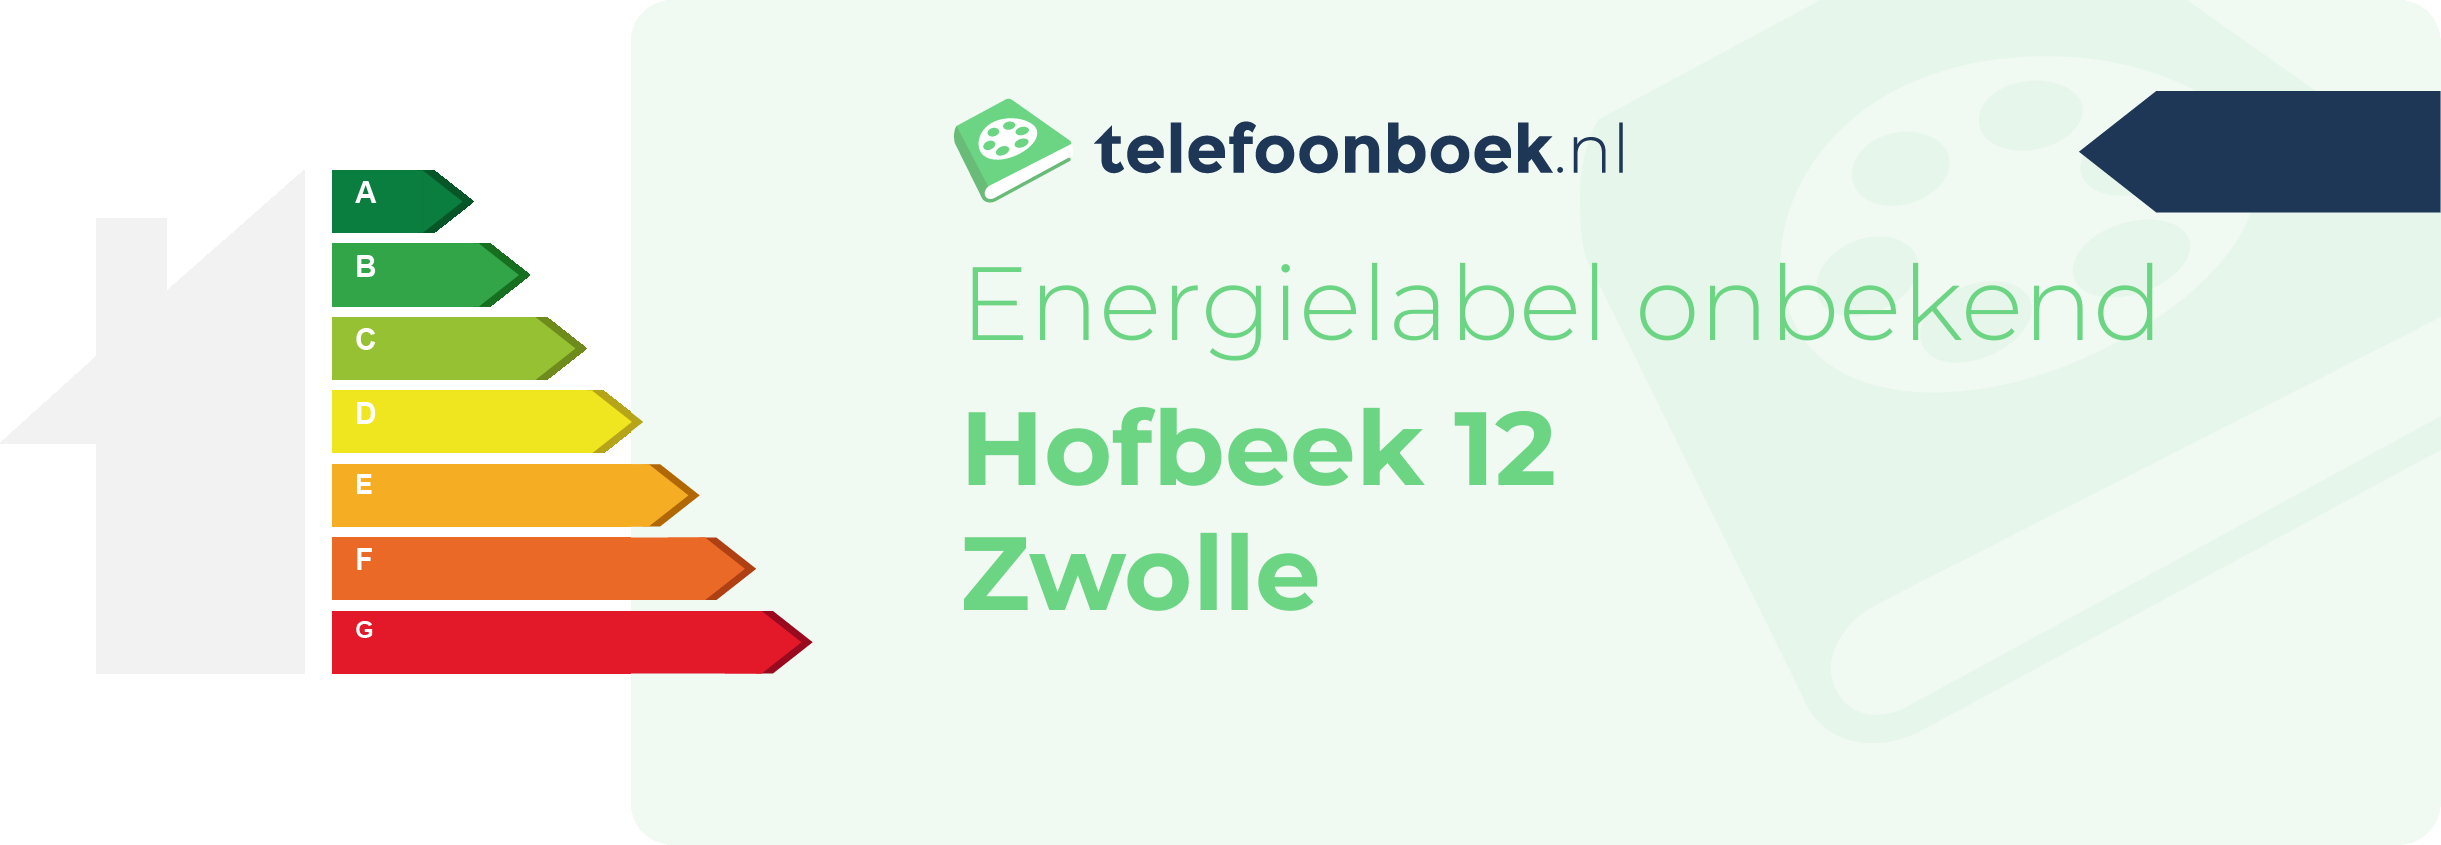 Energielabel Hofbeek 12 Zwolle